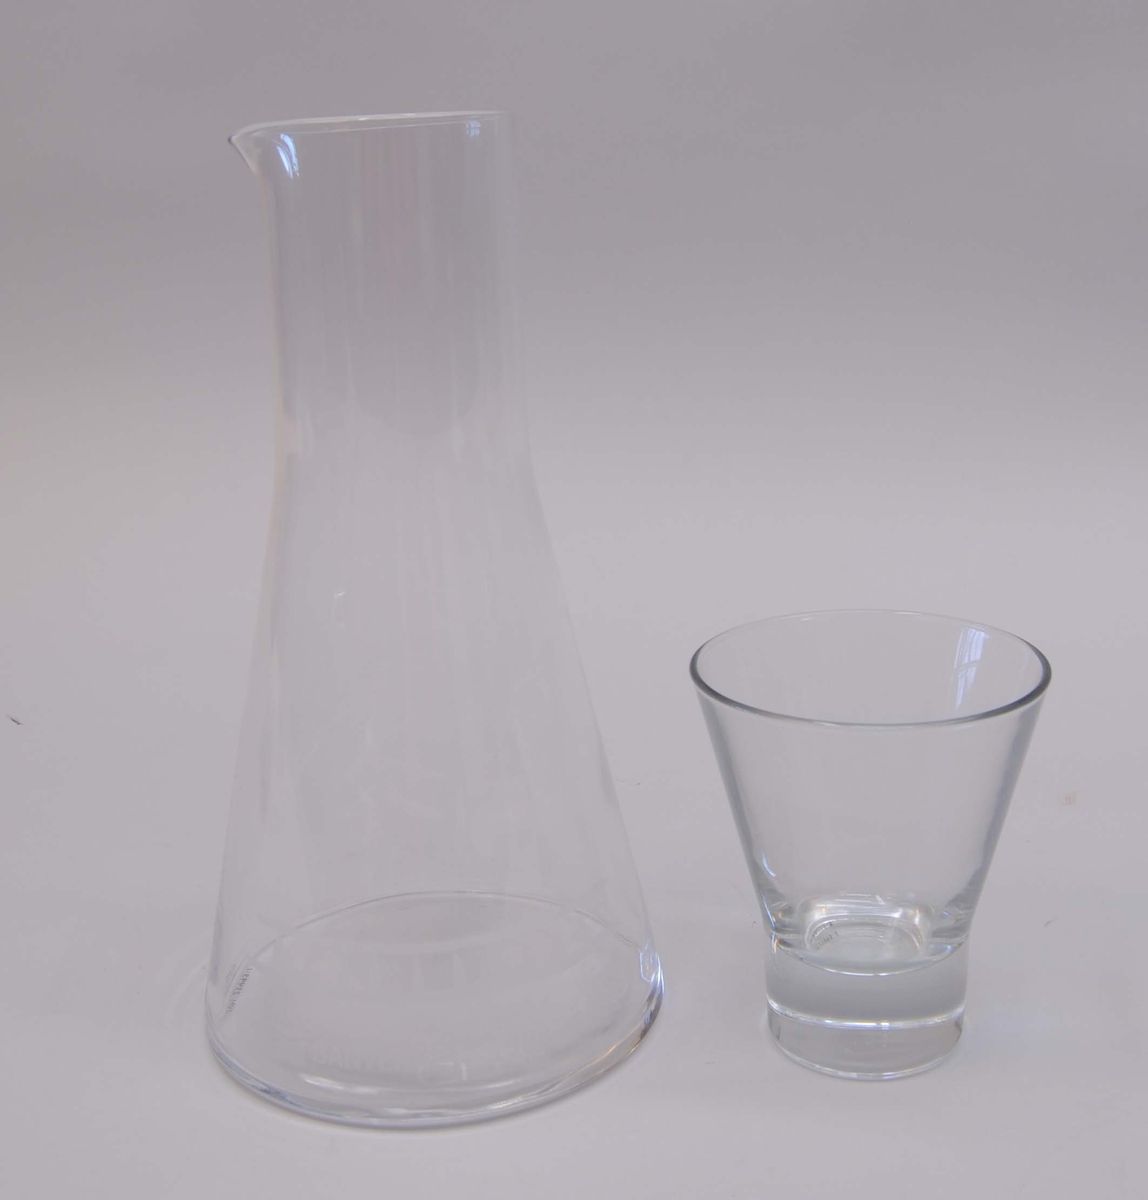 Vattenkaraff (:1) av kristallglas med tillhörande dricksglas (:2) som med botten nedåt bildar en kork för karaffen. Karaffen har en liten öppen pip. Karaffen är märkt med Banverkets logotyp samt årtalen 1988-2010. Ovanför är en stiliserad bit av en räls etsad. Glaset har en tjock cylindrisk botten och ovanför botten är glaset utsvängt. Karaffen har en motsvarande form fast svängd nedtill mot botten, och i övre delen är den cylinderformad. Karaffen och glaset har både en klisteretikett med texten "nybro Crystal Sweden".